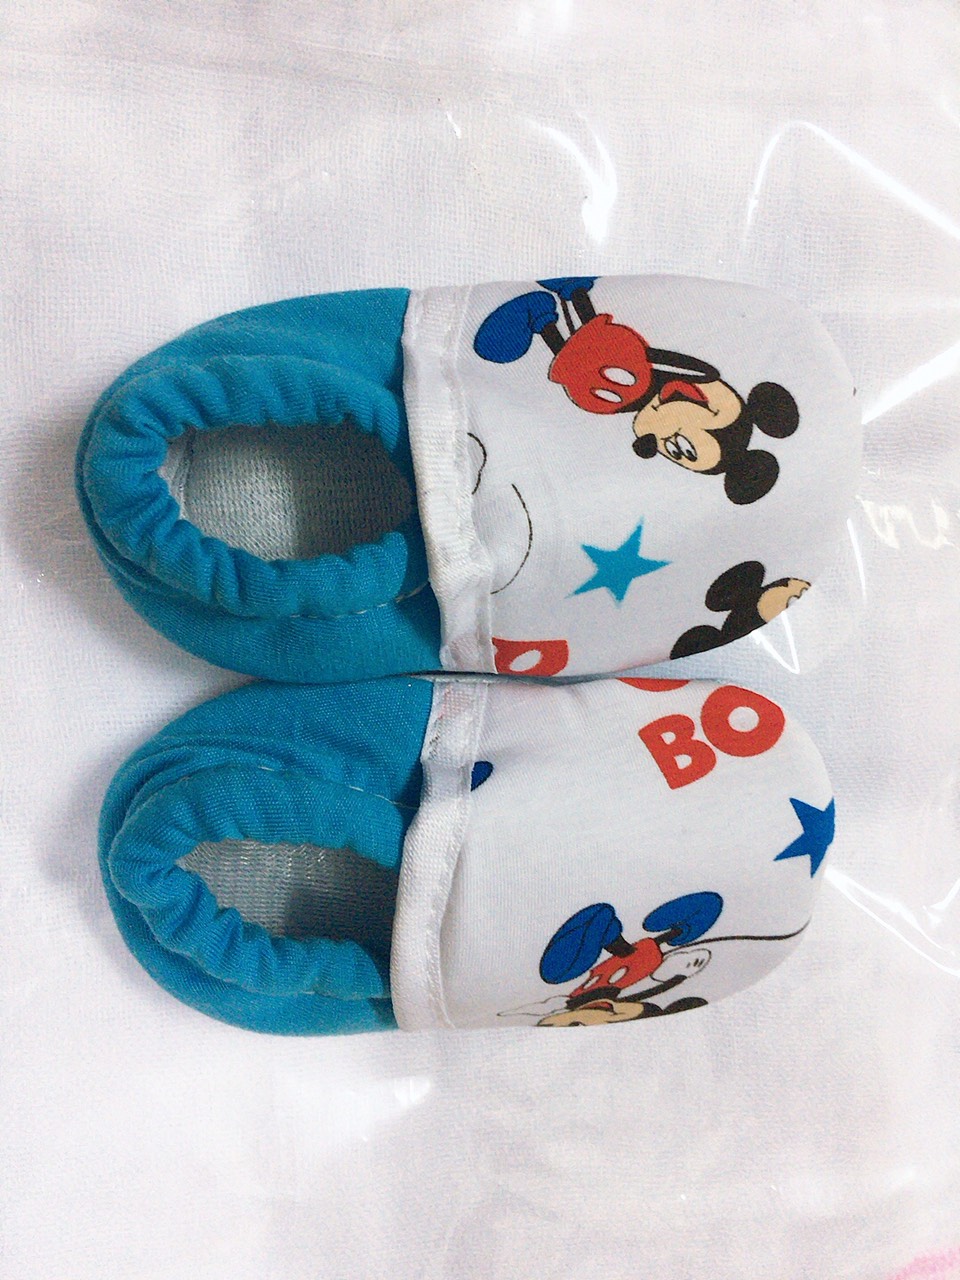 10 đôi giày vải in hình cho bé Bobo(2-12th)